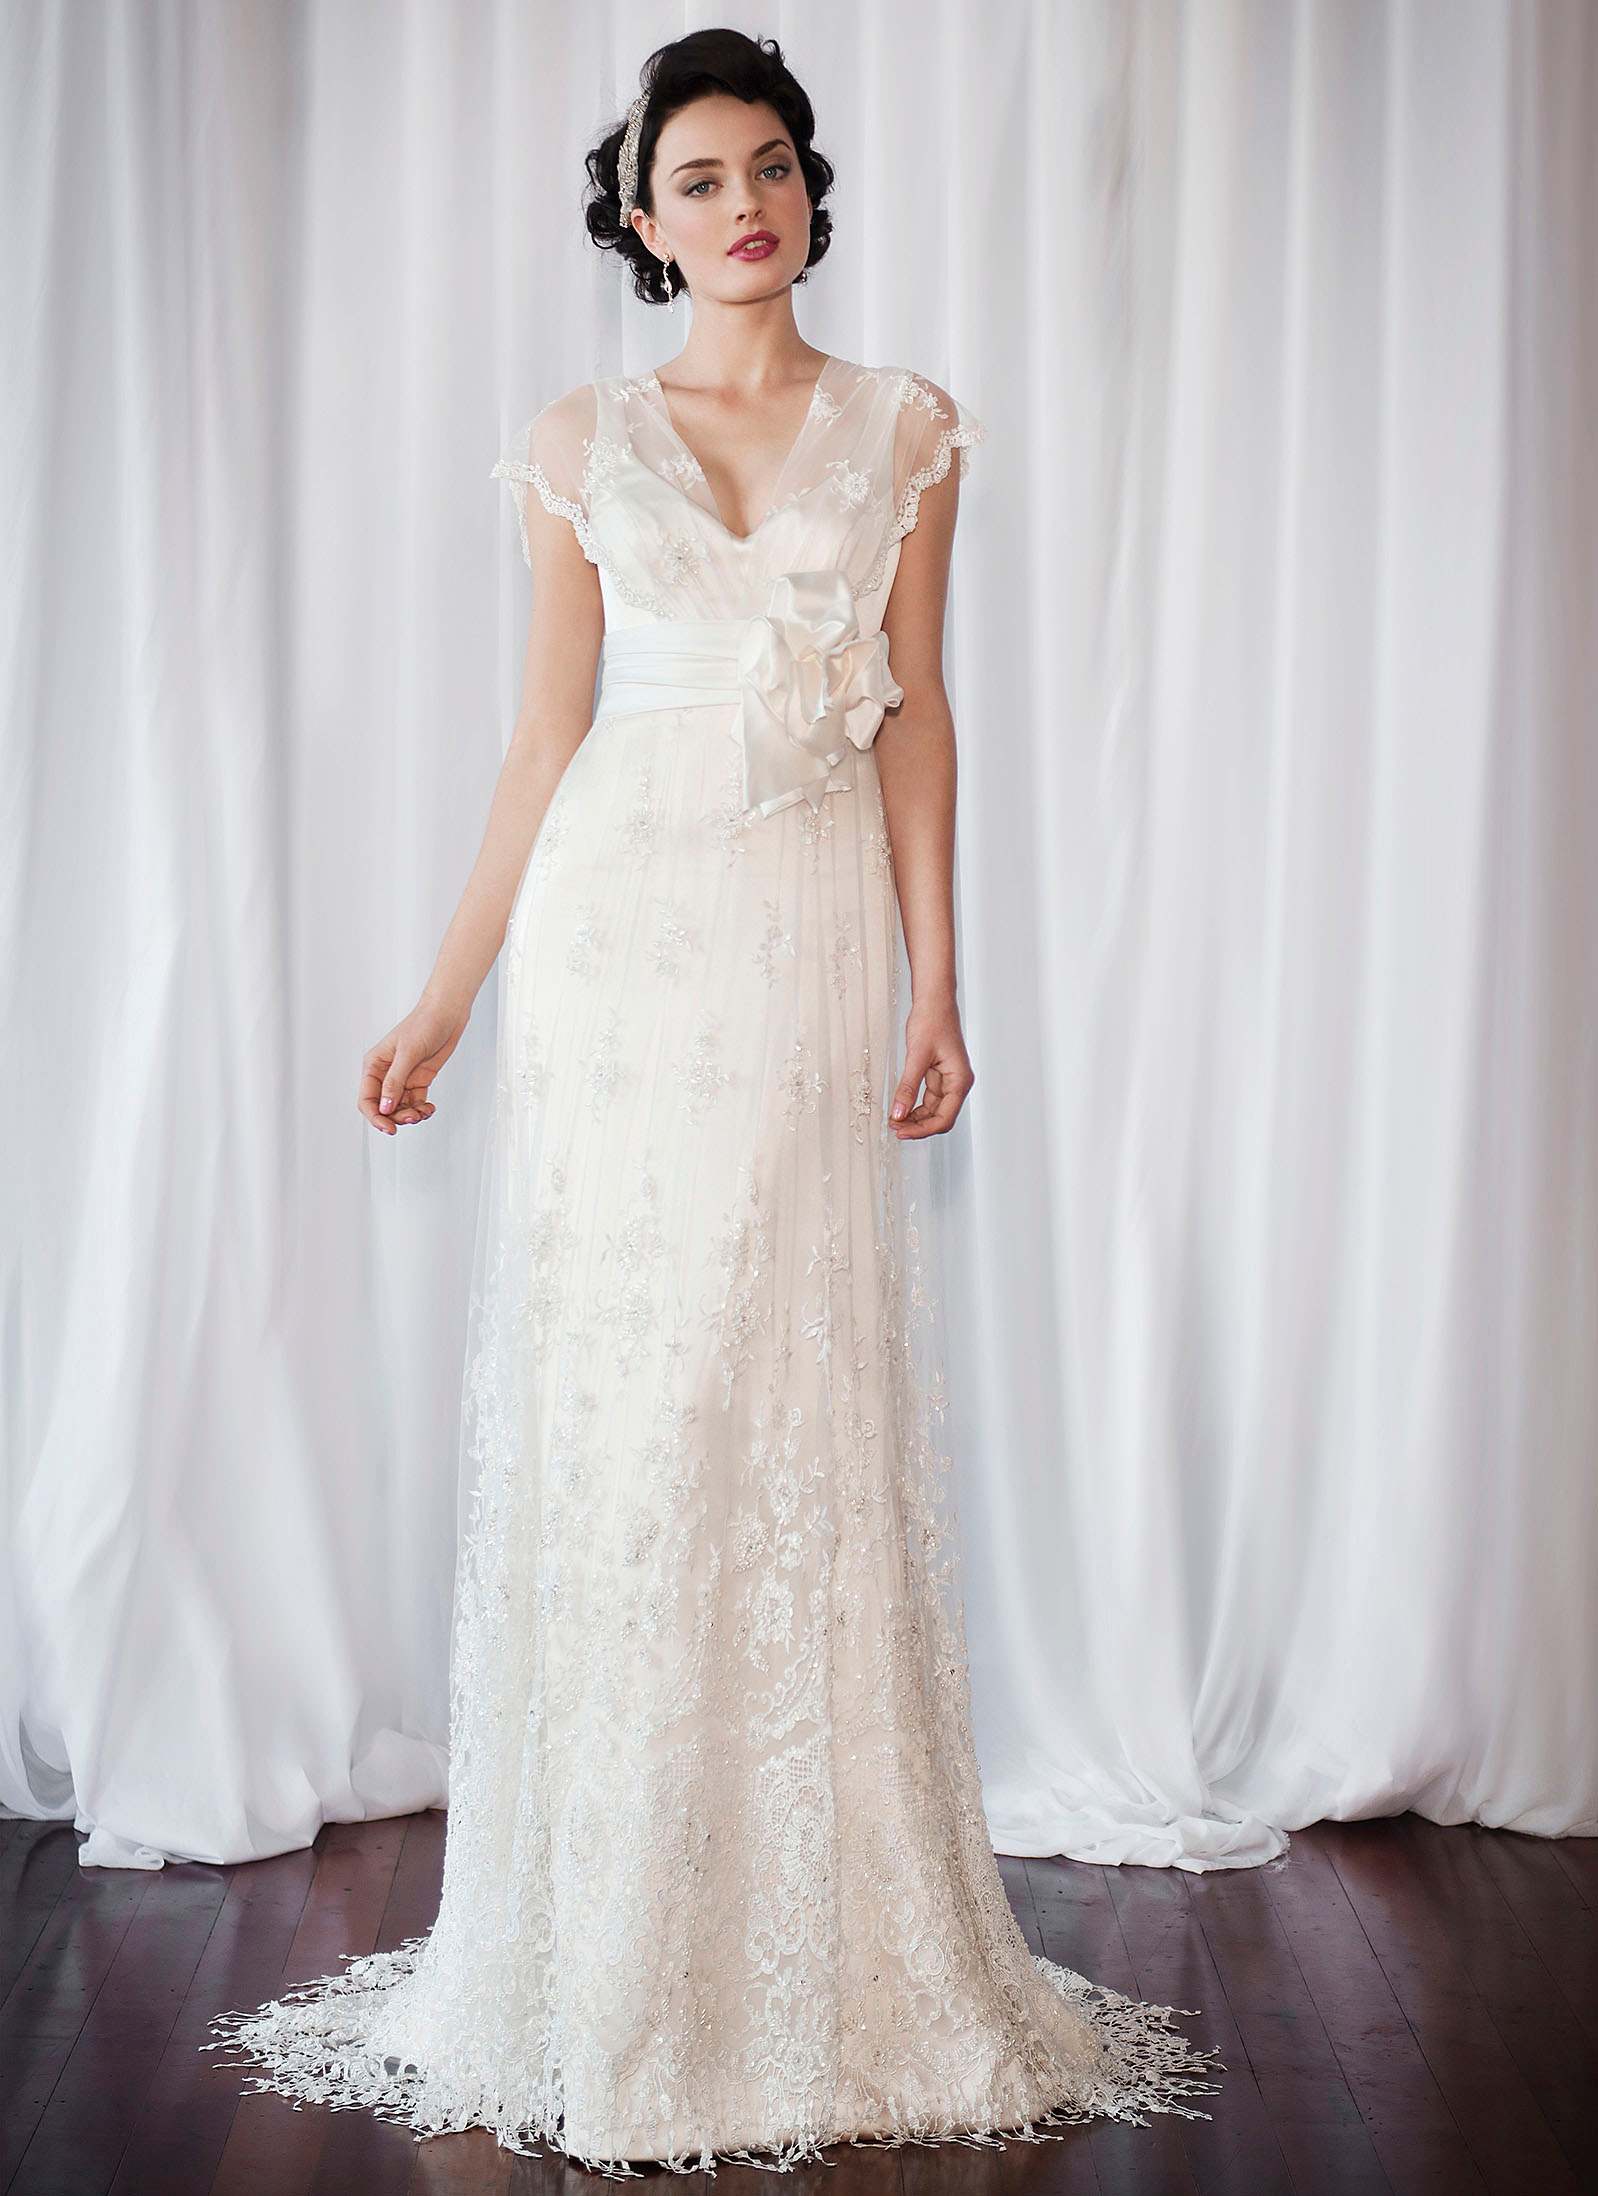 vintage wedding gowns vintage wedding dress by anna schimmel | new zealand view full size ... FBECXVU